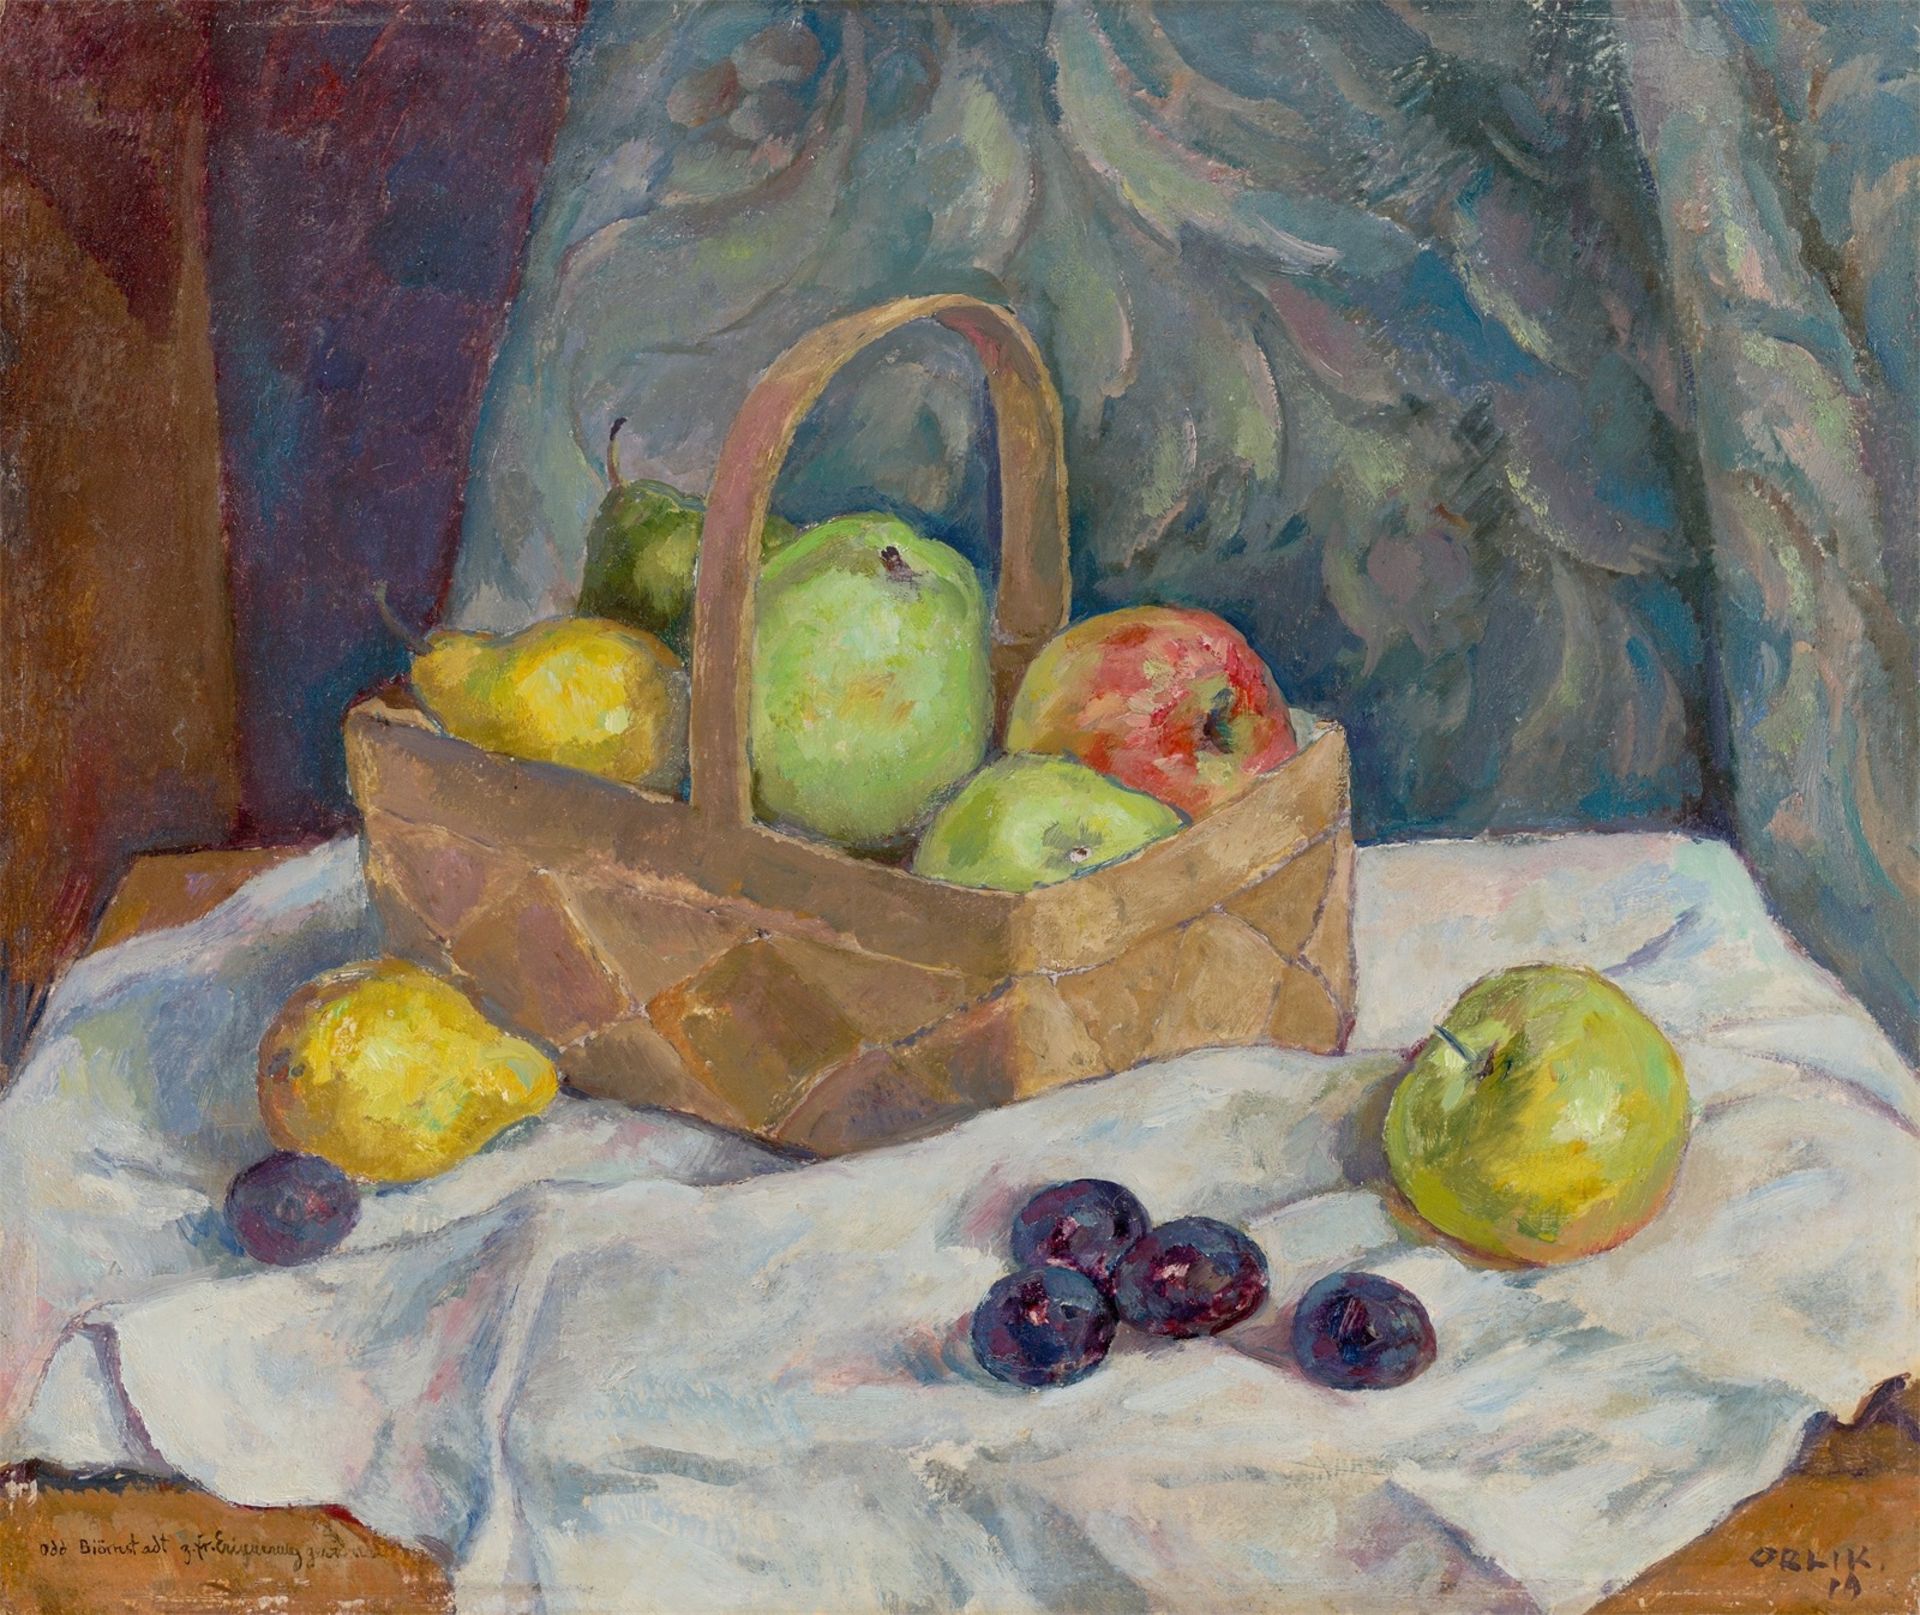 Emil Orlik. Stillleben mit Äpfeln, Birnen und Pflaumen. 1919